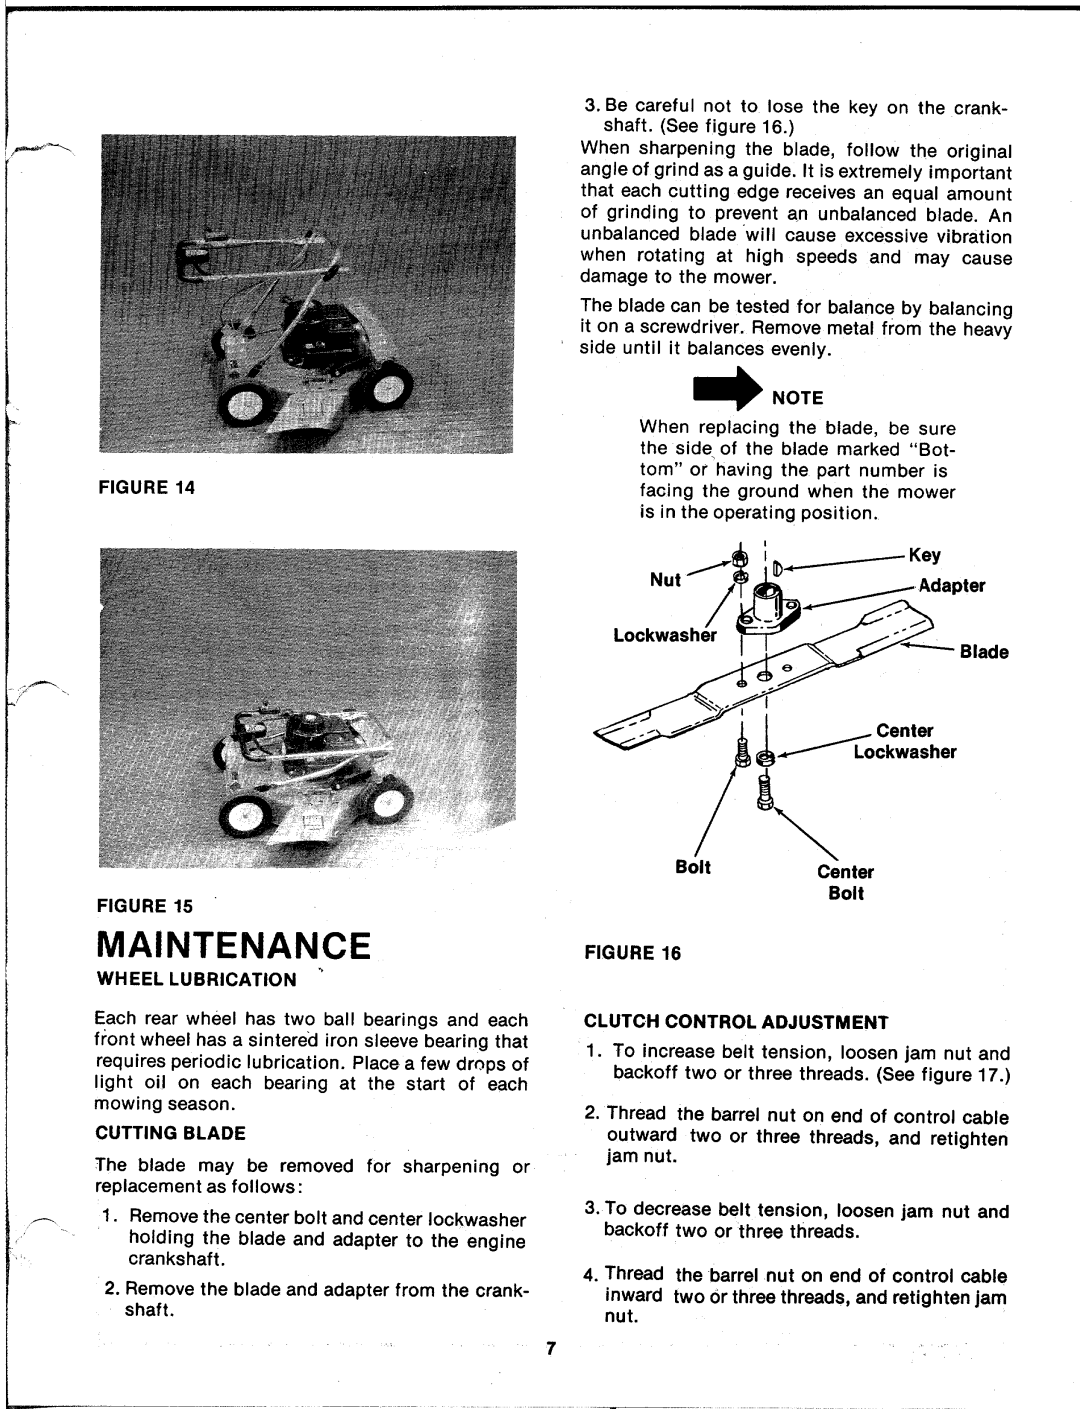 MTD 128-255A manual 